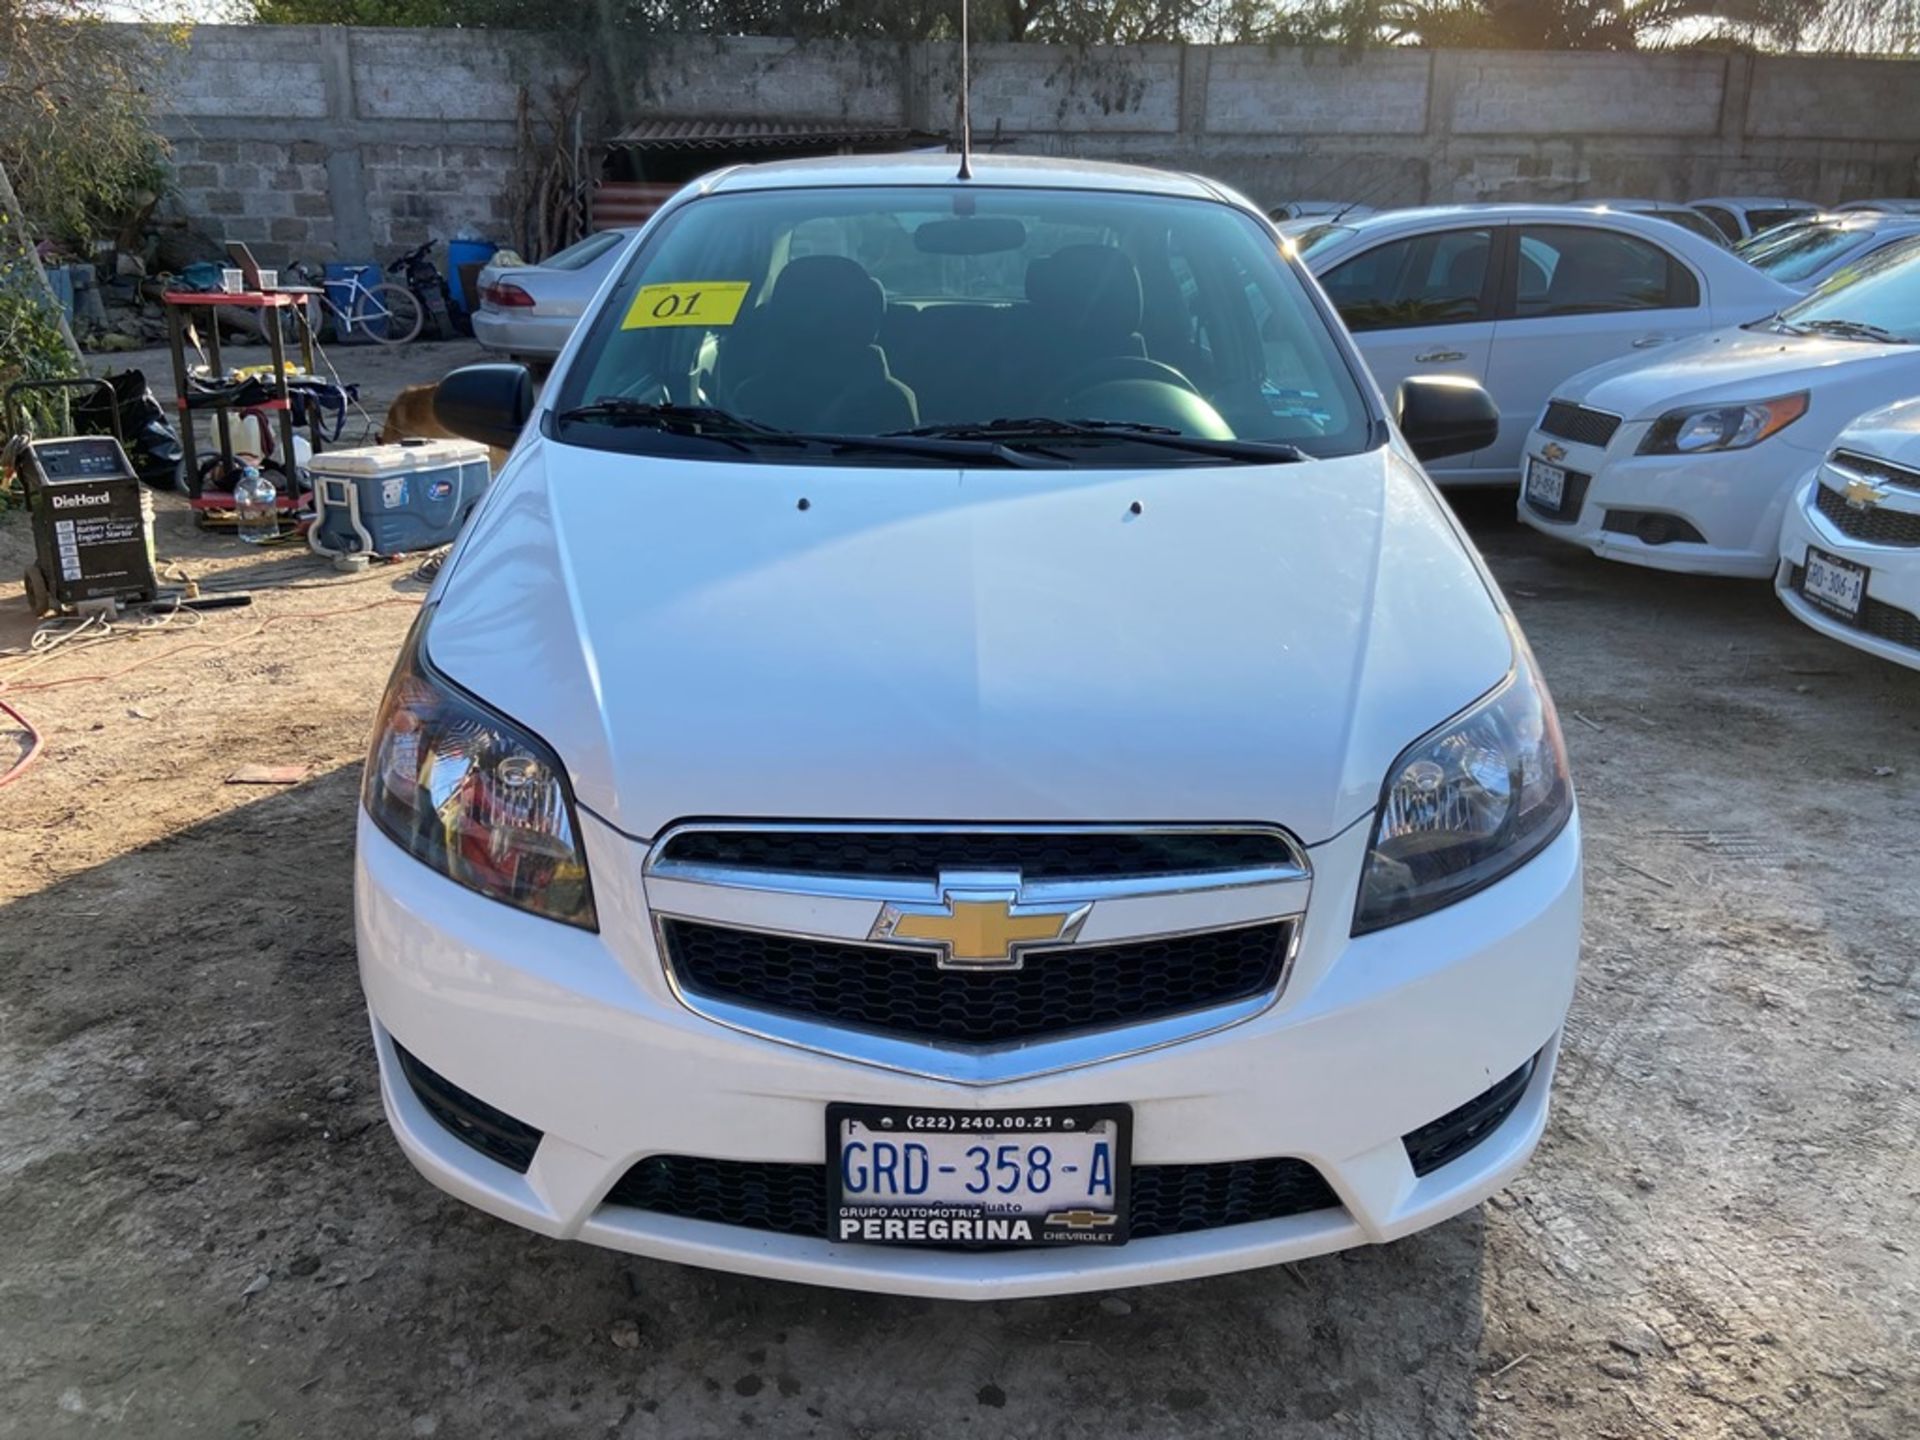 Vehículo marca Chevrolet tipo Aveo, modelo 2018, número de serie 3G1TB5CF4JL138125 - Image 2 of 16